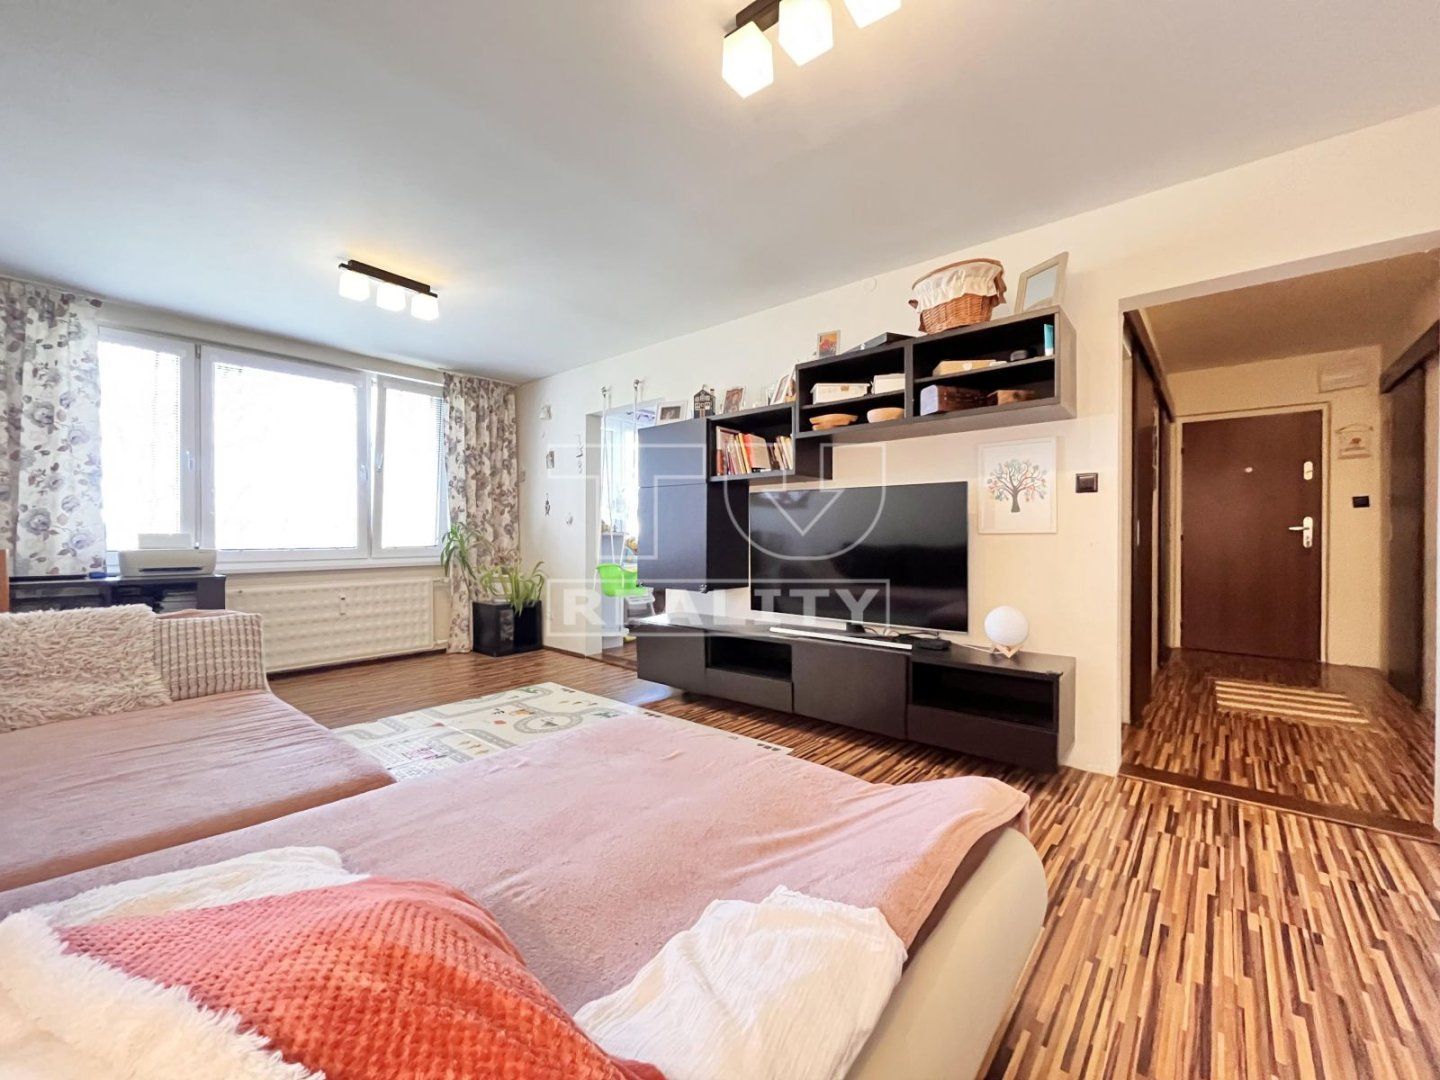 TUreality ponúka do nájmu veľký pekný 2i byt v širšom centre mesta Zvolen o výmere 65 m²